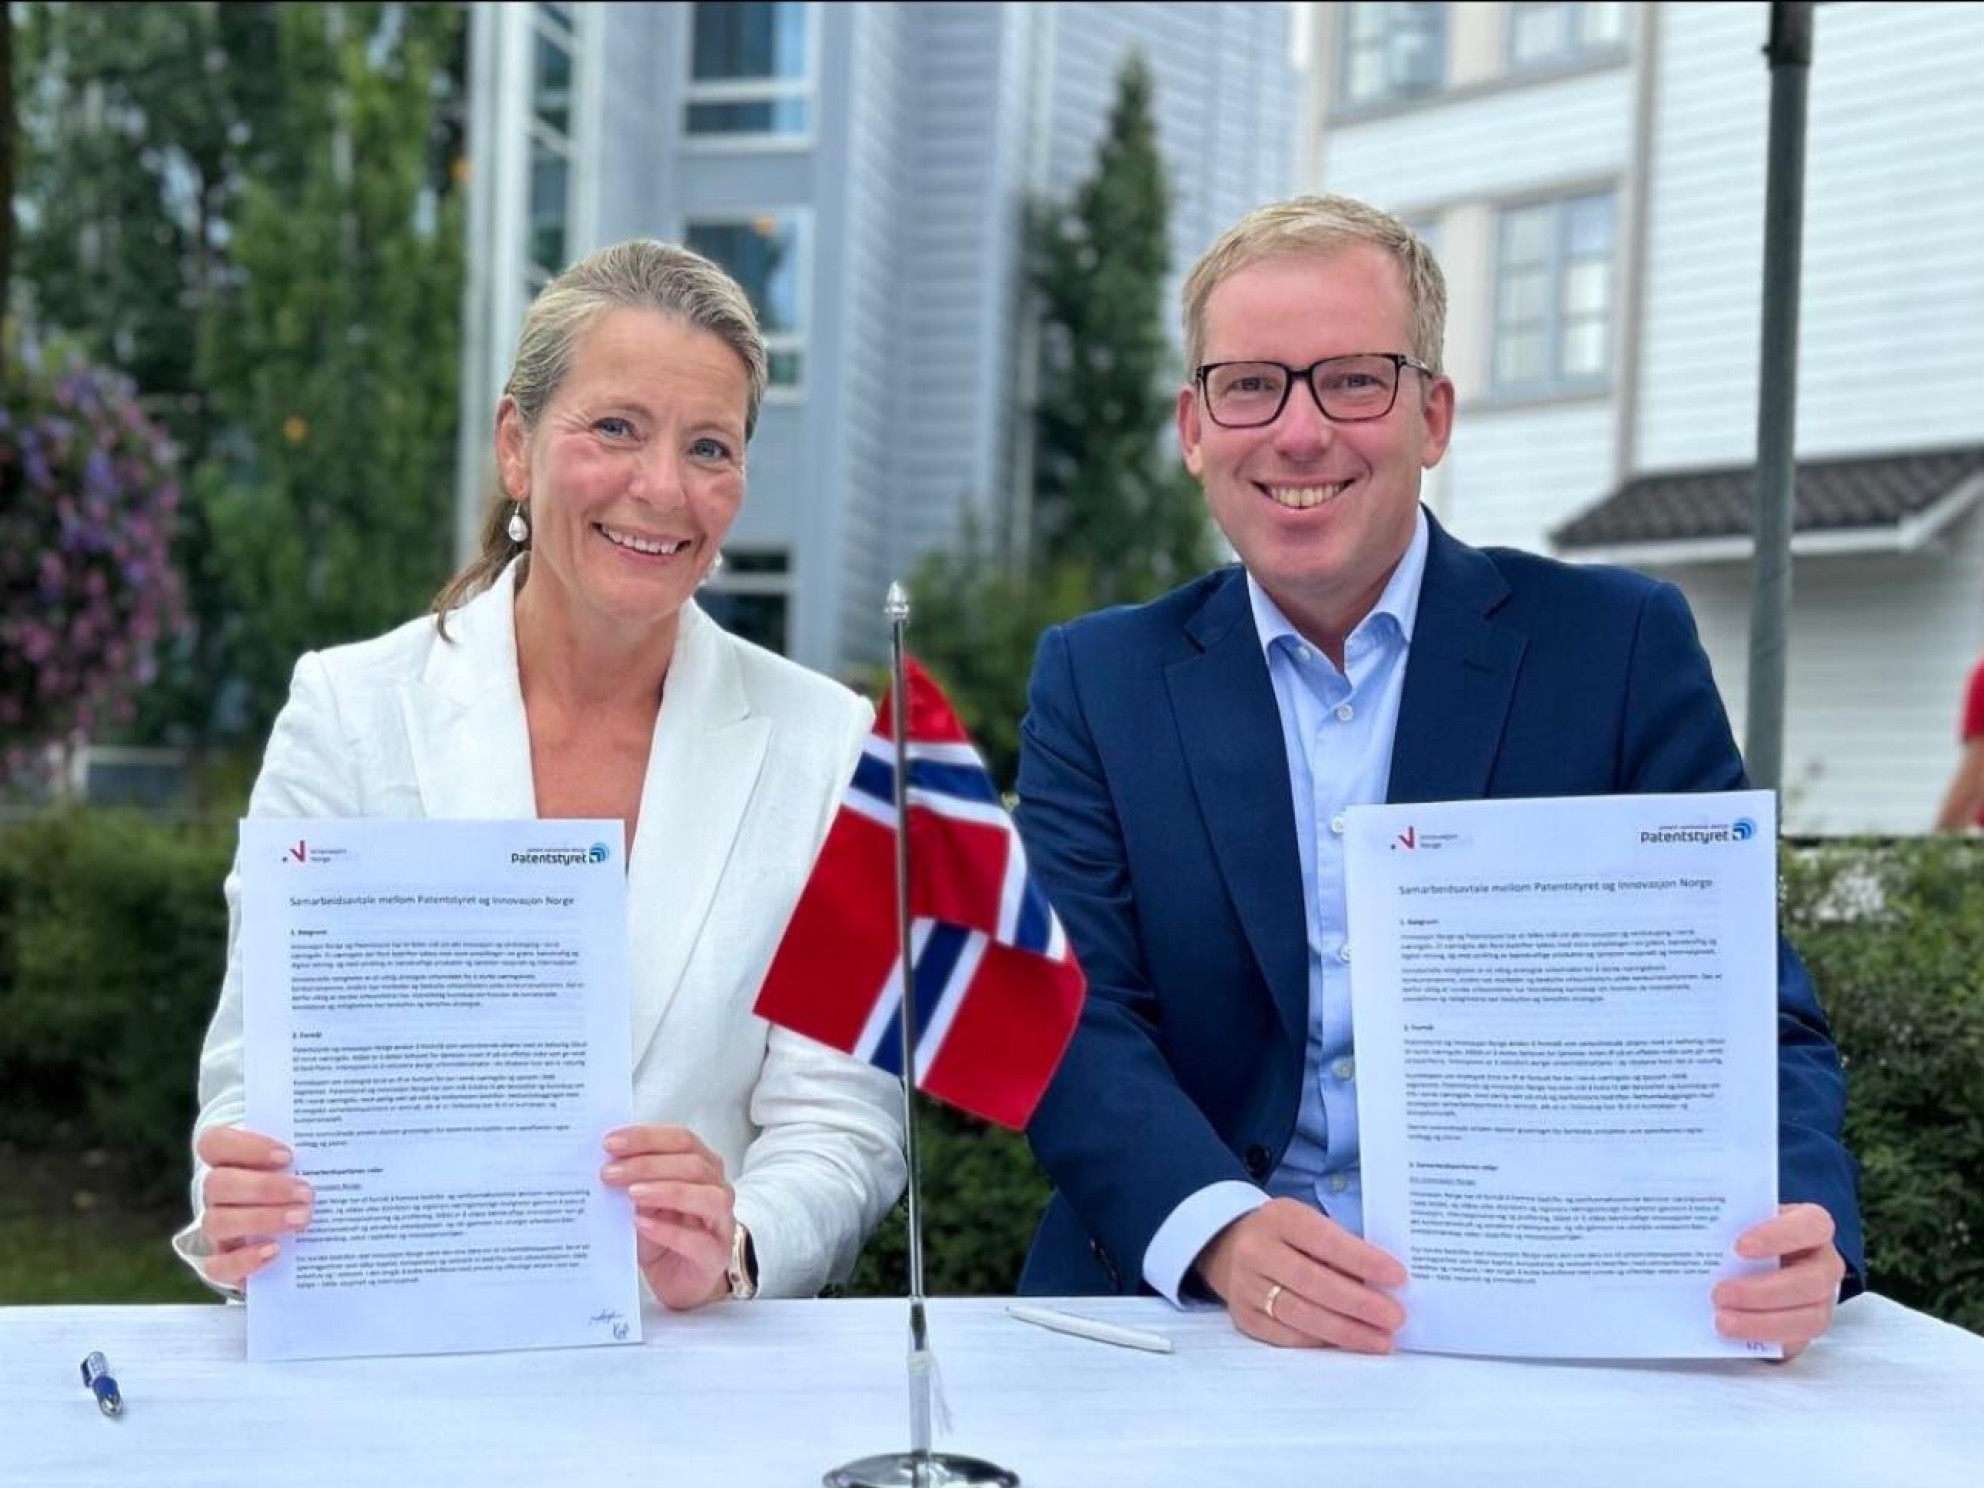 Kathrine Myhre og Håkon Haugli viser frem signert samarbeidsavtale